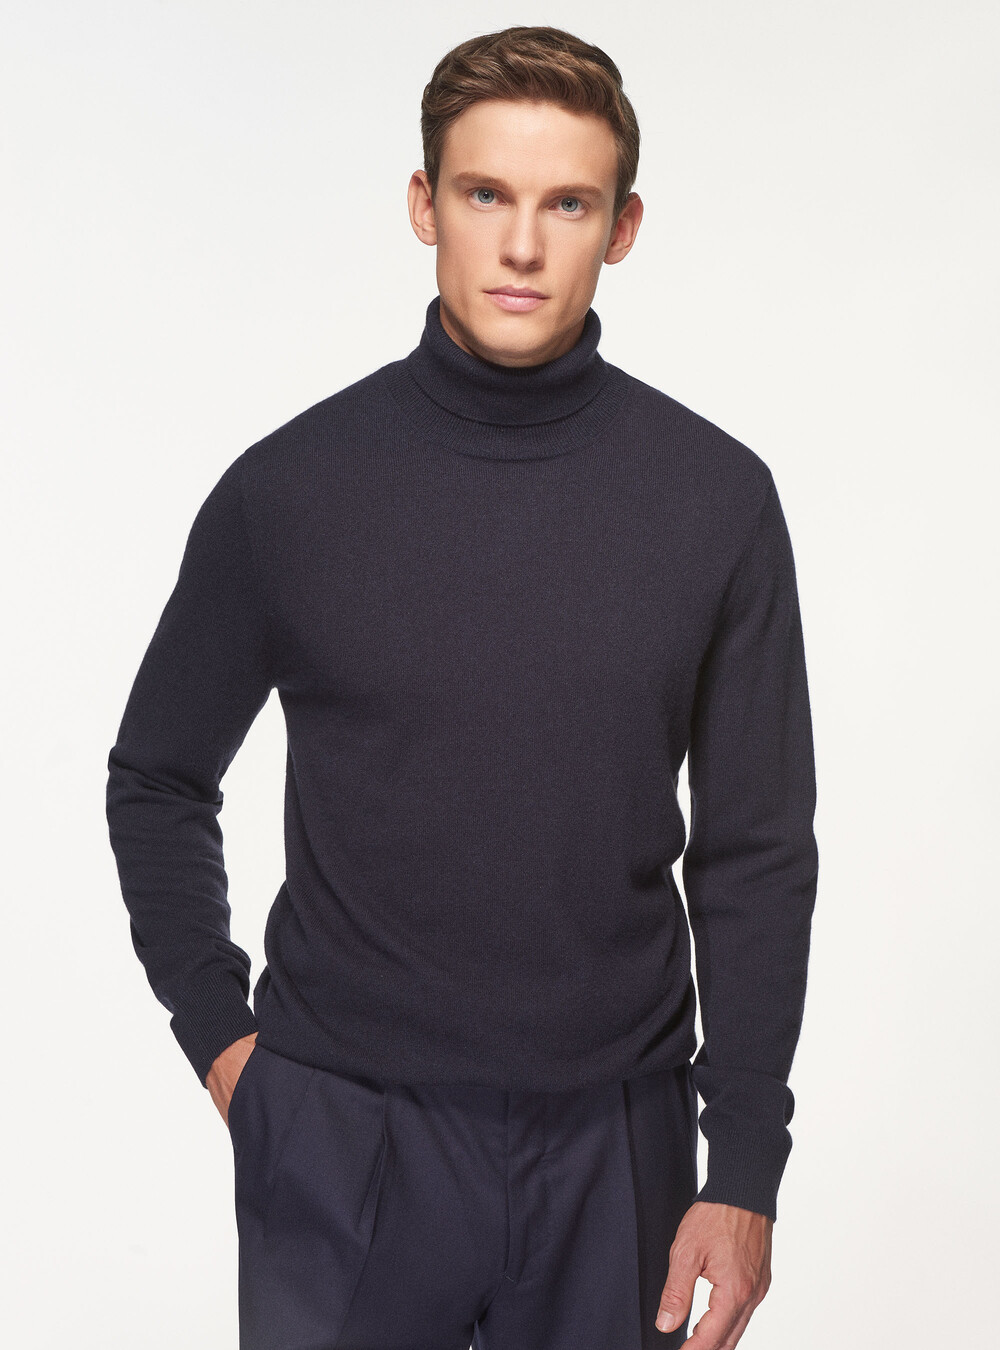 Turtleneck in 100% cashmere | GutteridgeEU | Men's Sweaters